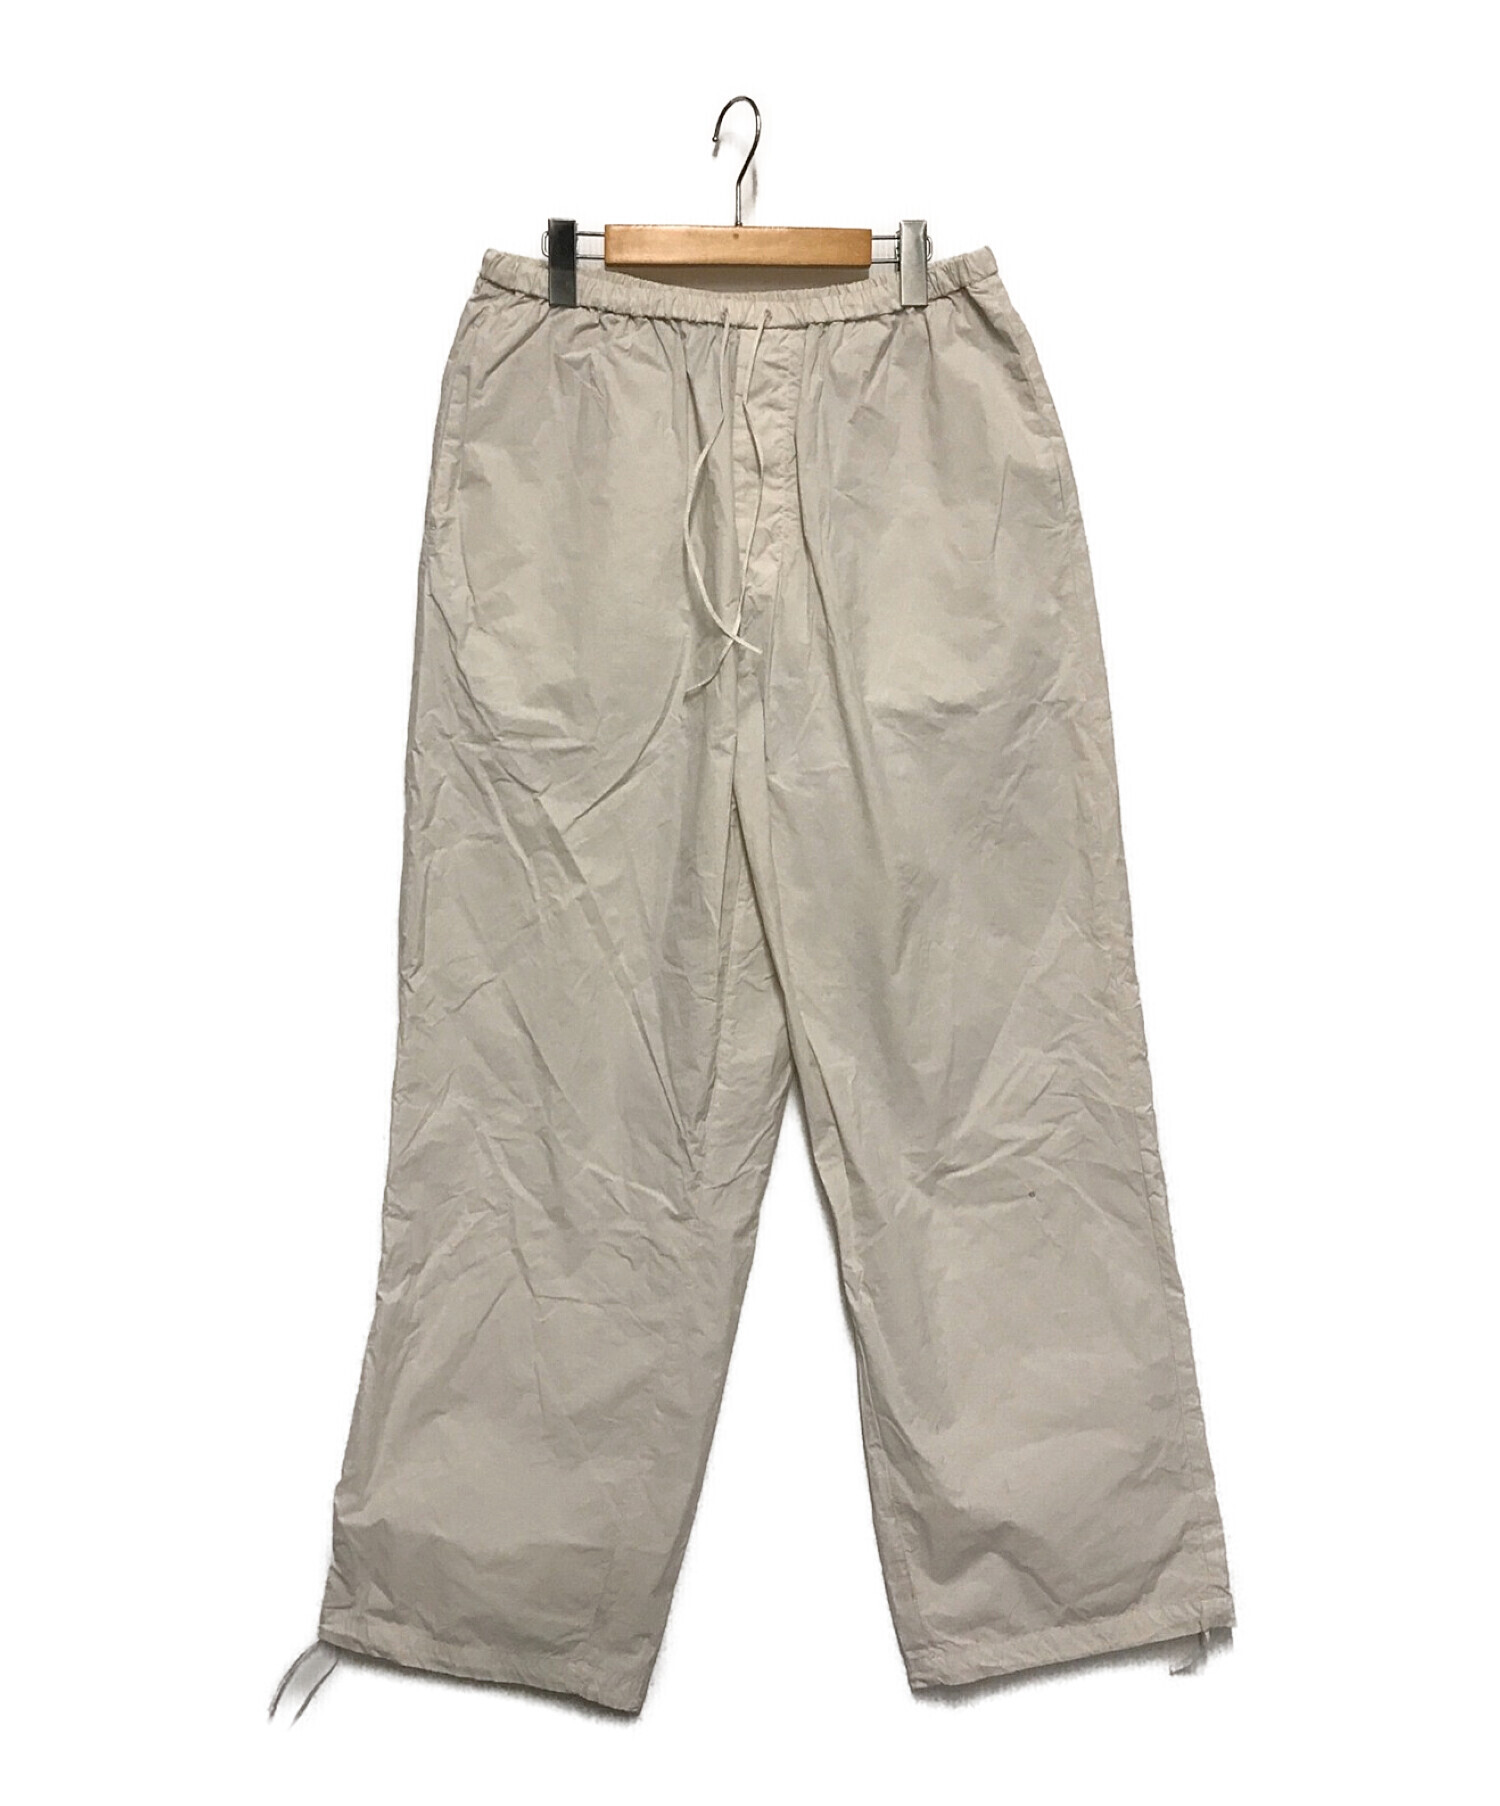 ATON (エイトン) ventile nylon snow pants アイボリー サイズ:6